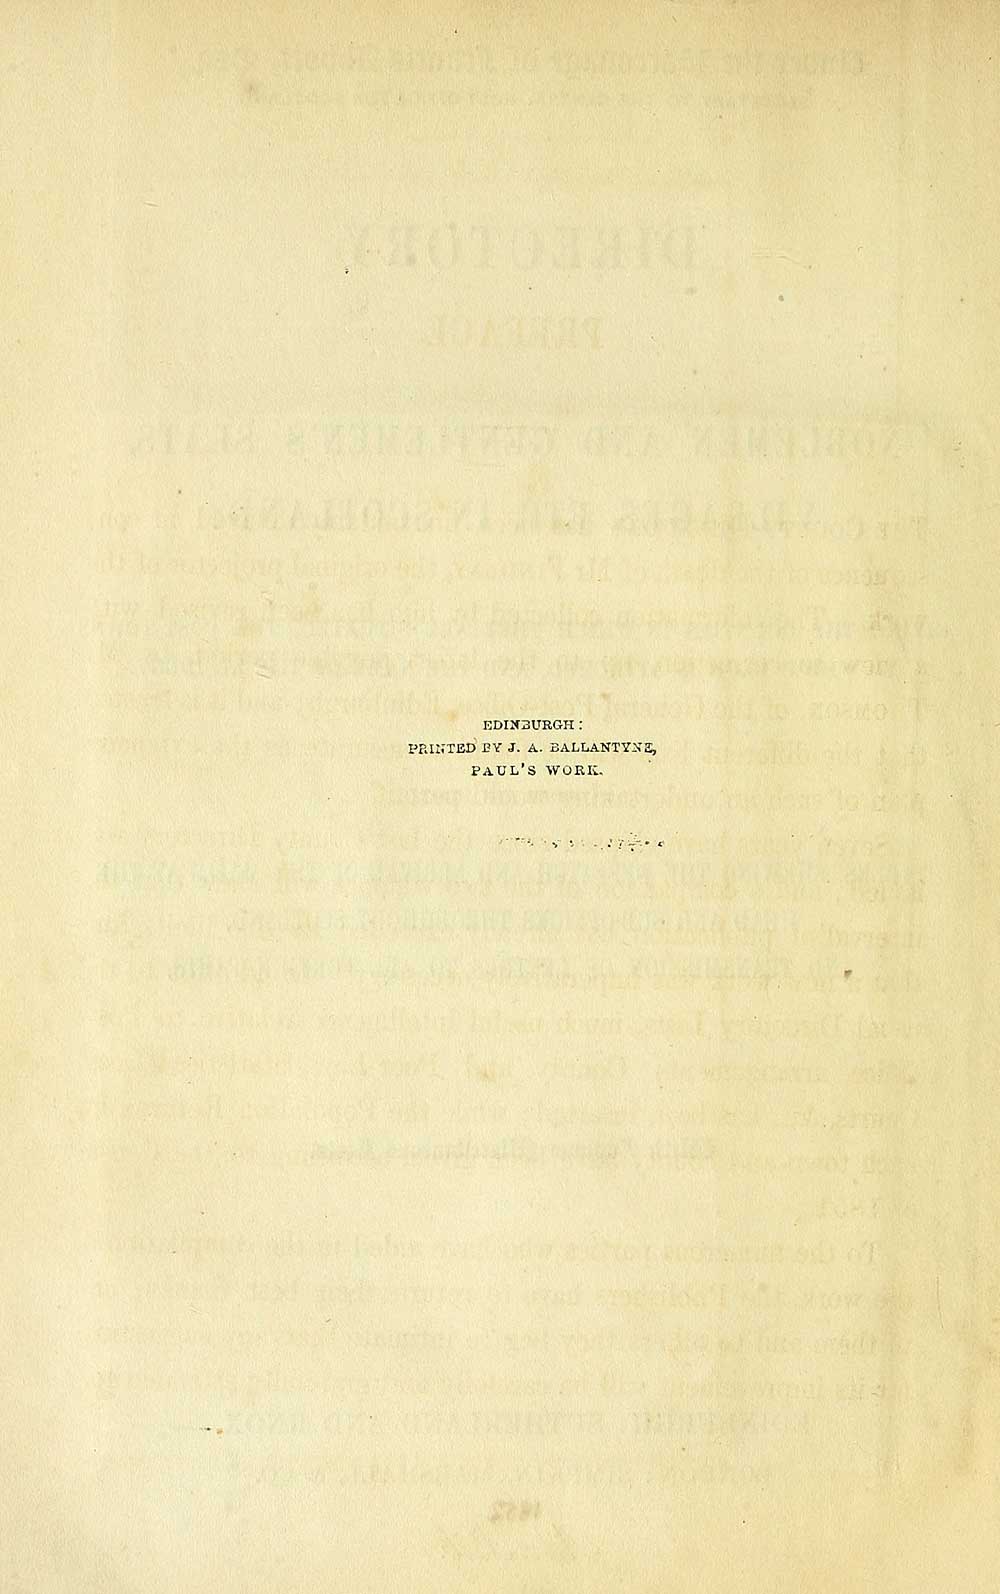 (8) - Scotland > 1852, 1857 - Directory to noblemen and gentlemen's ...